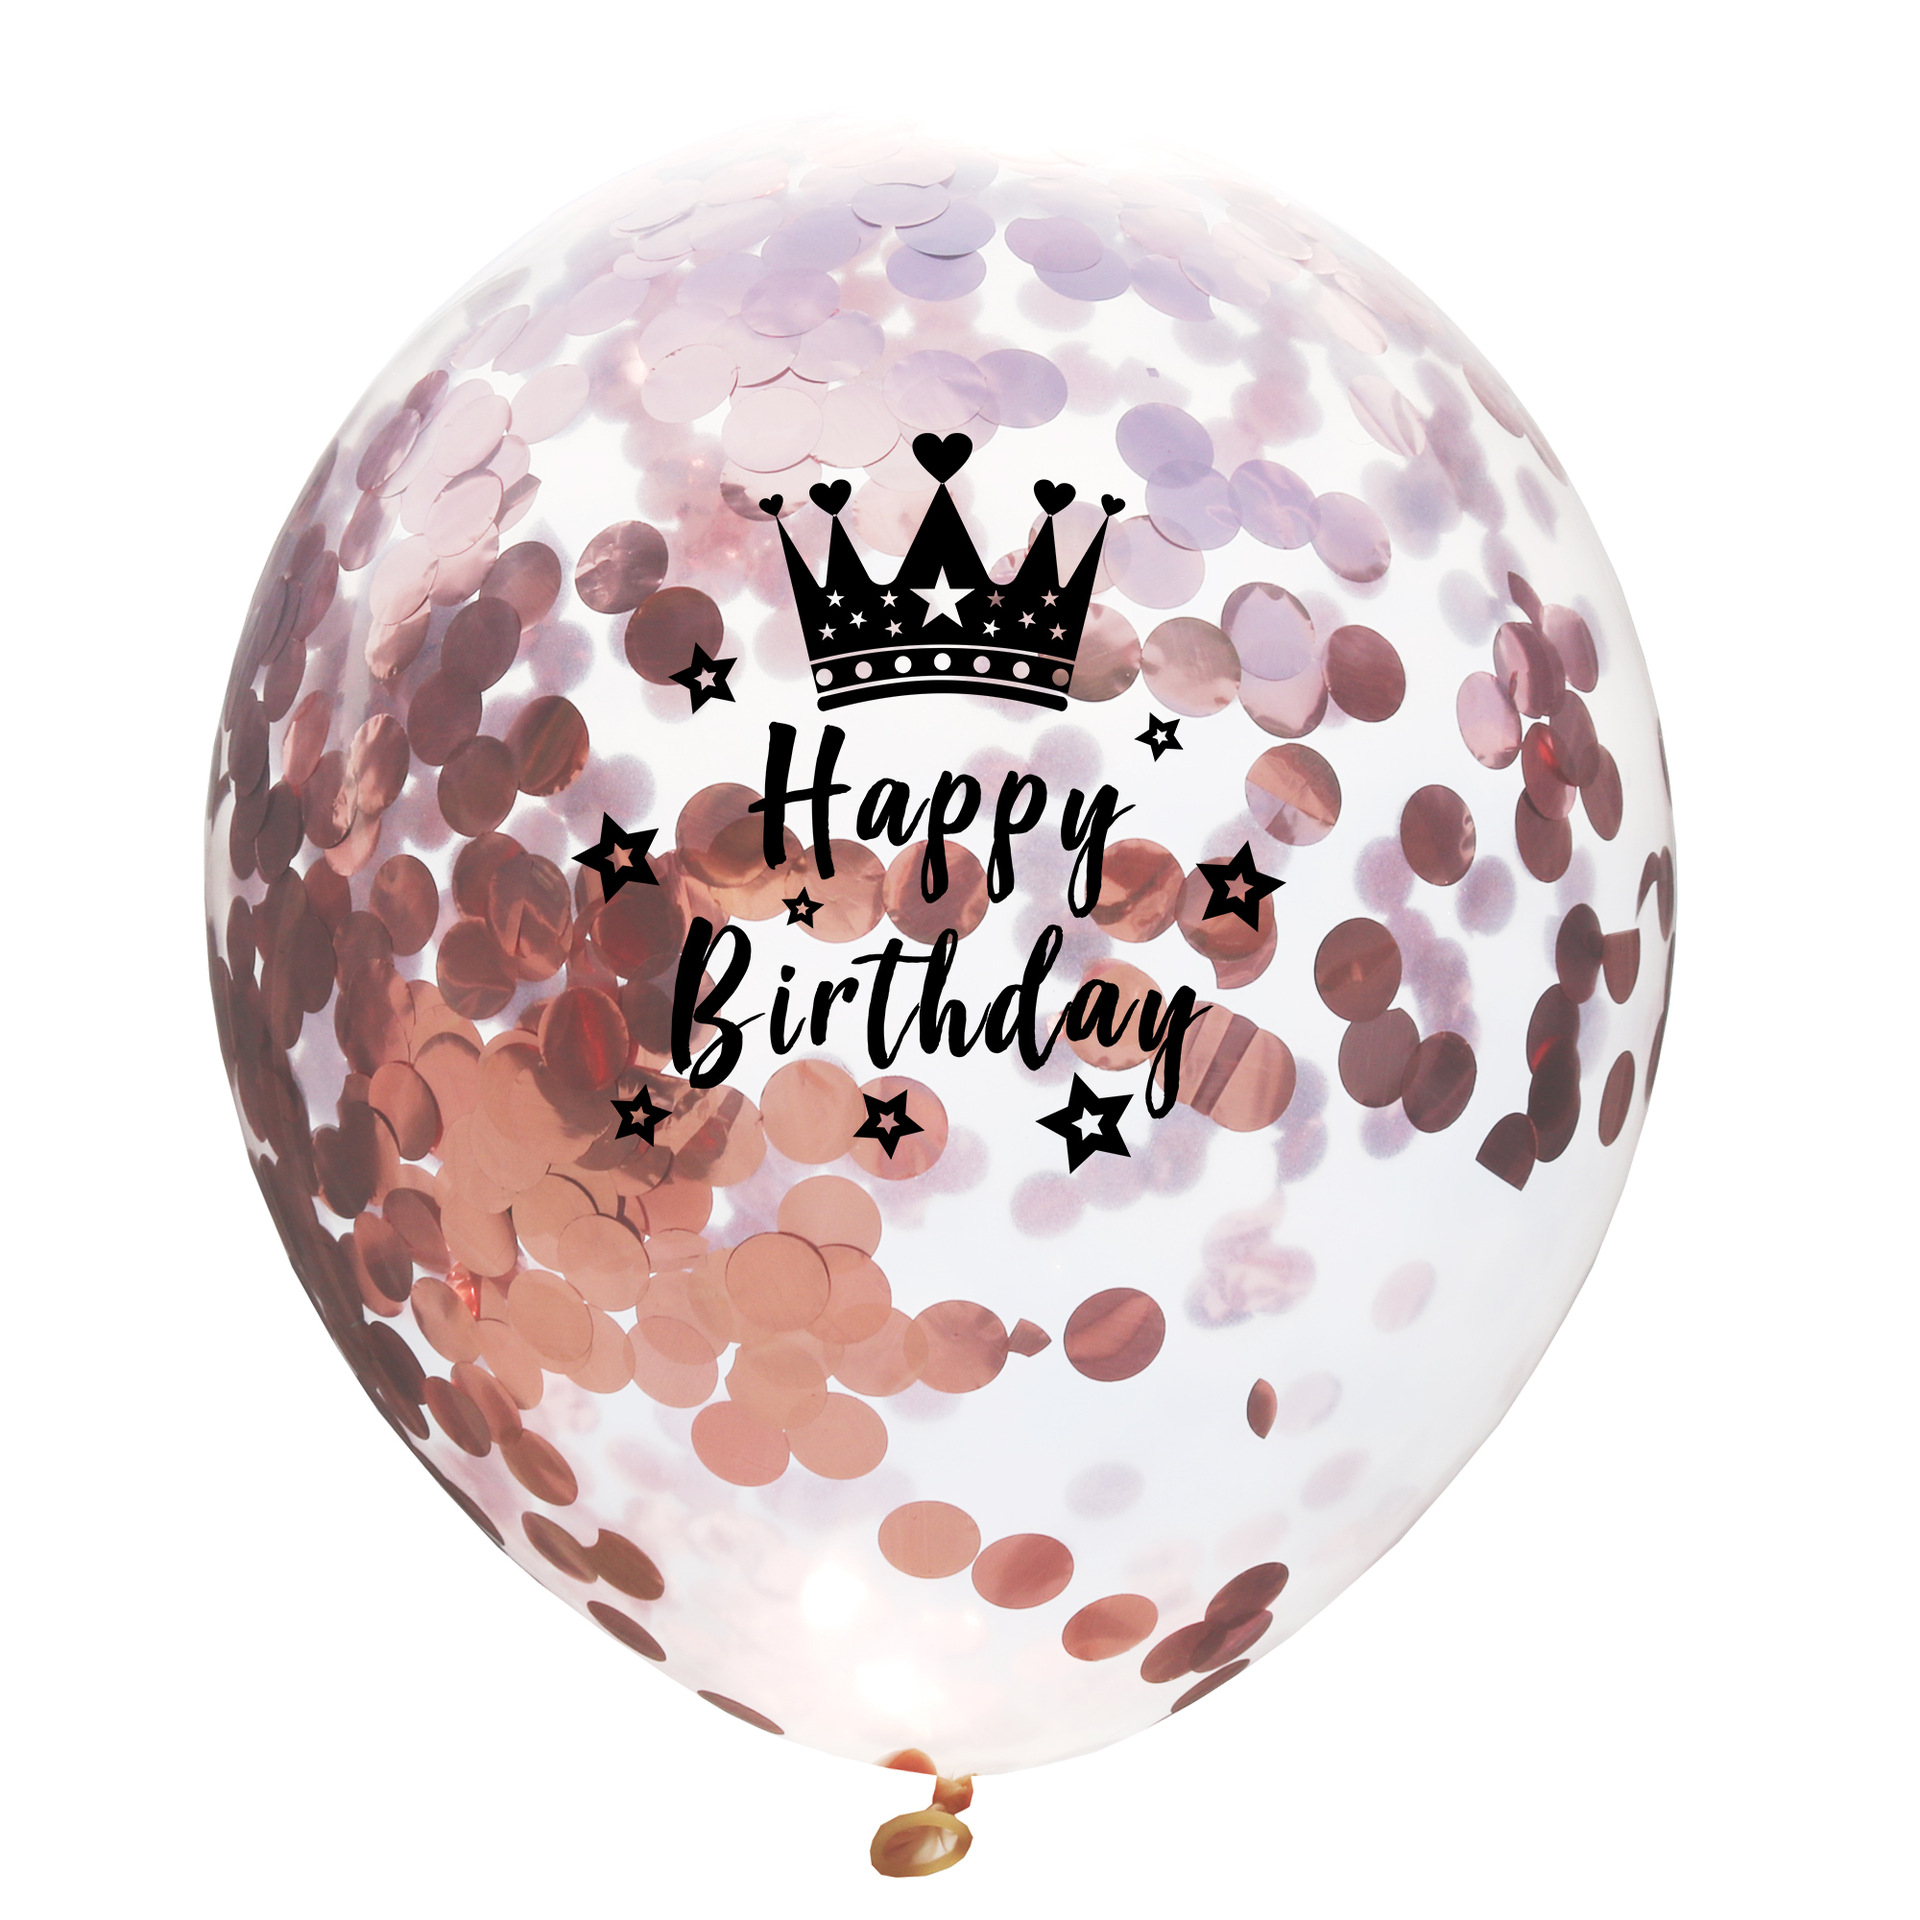 批发18寸圆形皇冠气球婴儿系列皇冠铝膜气球男孩女孩生日派对气球-阿里巴巴